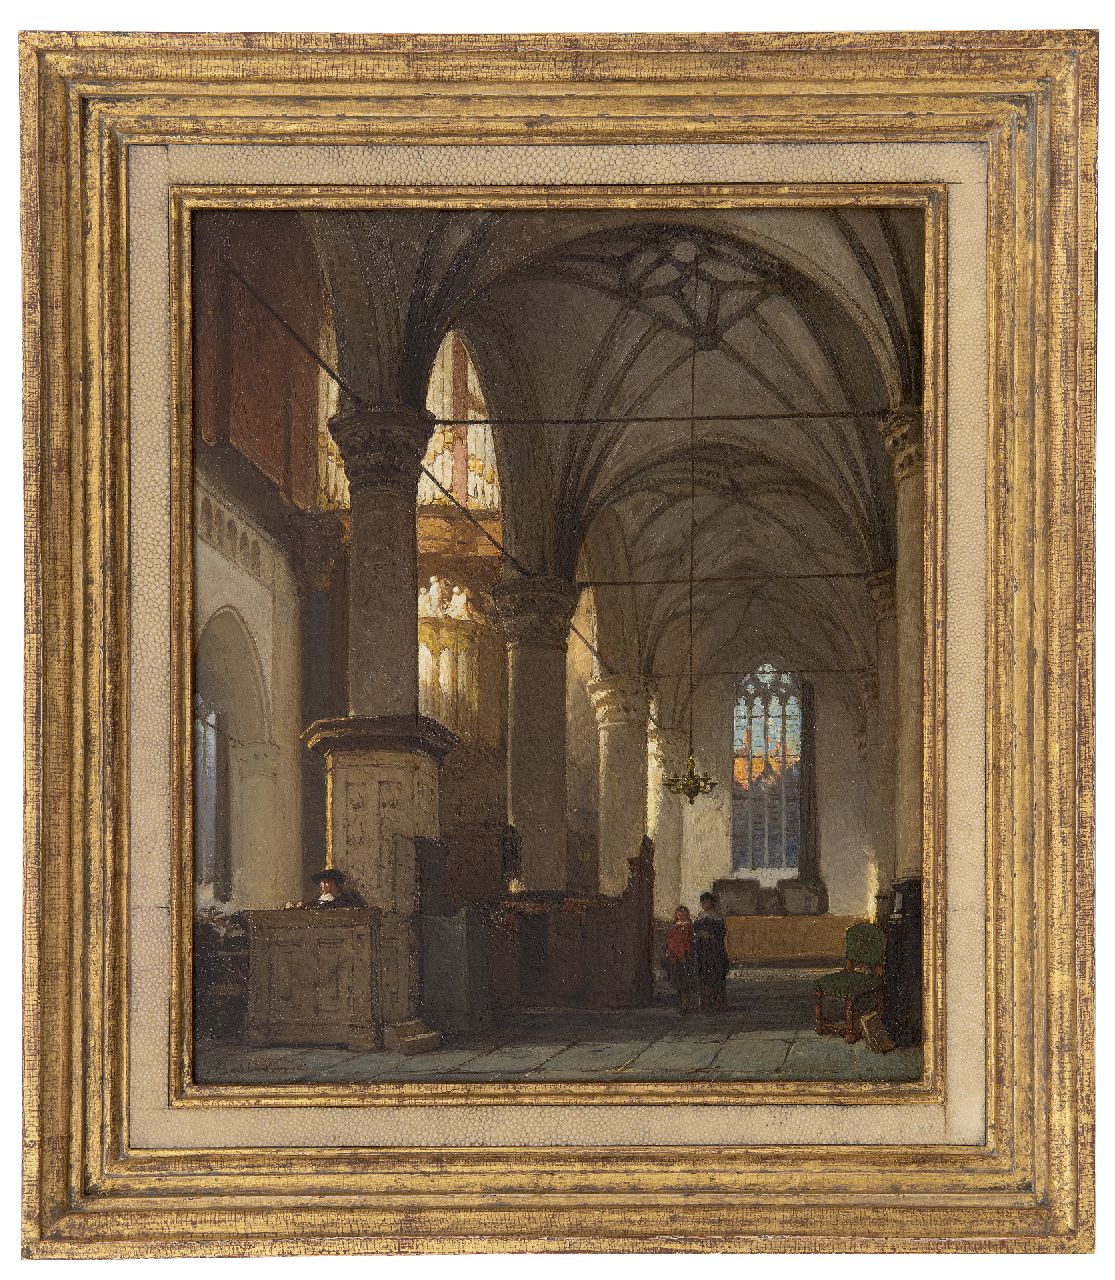 Bosboom J.  | Johannes Bosboom | Schilderijen te koop aangeboden | Interieur van de Grote of Sint-Laurenskerk in Alkmaar, olieverf op paneel 43,1 x 36,1 cm, gesigneerd linksonder